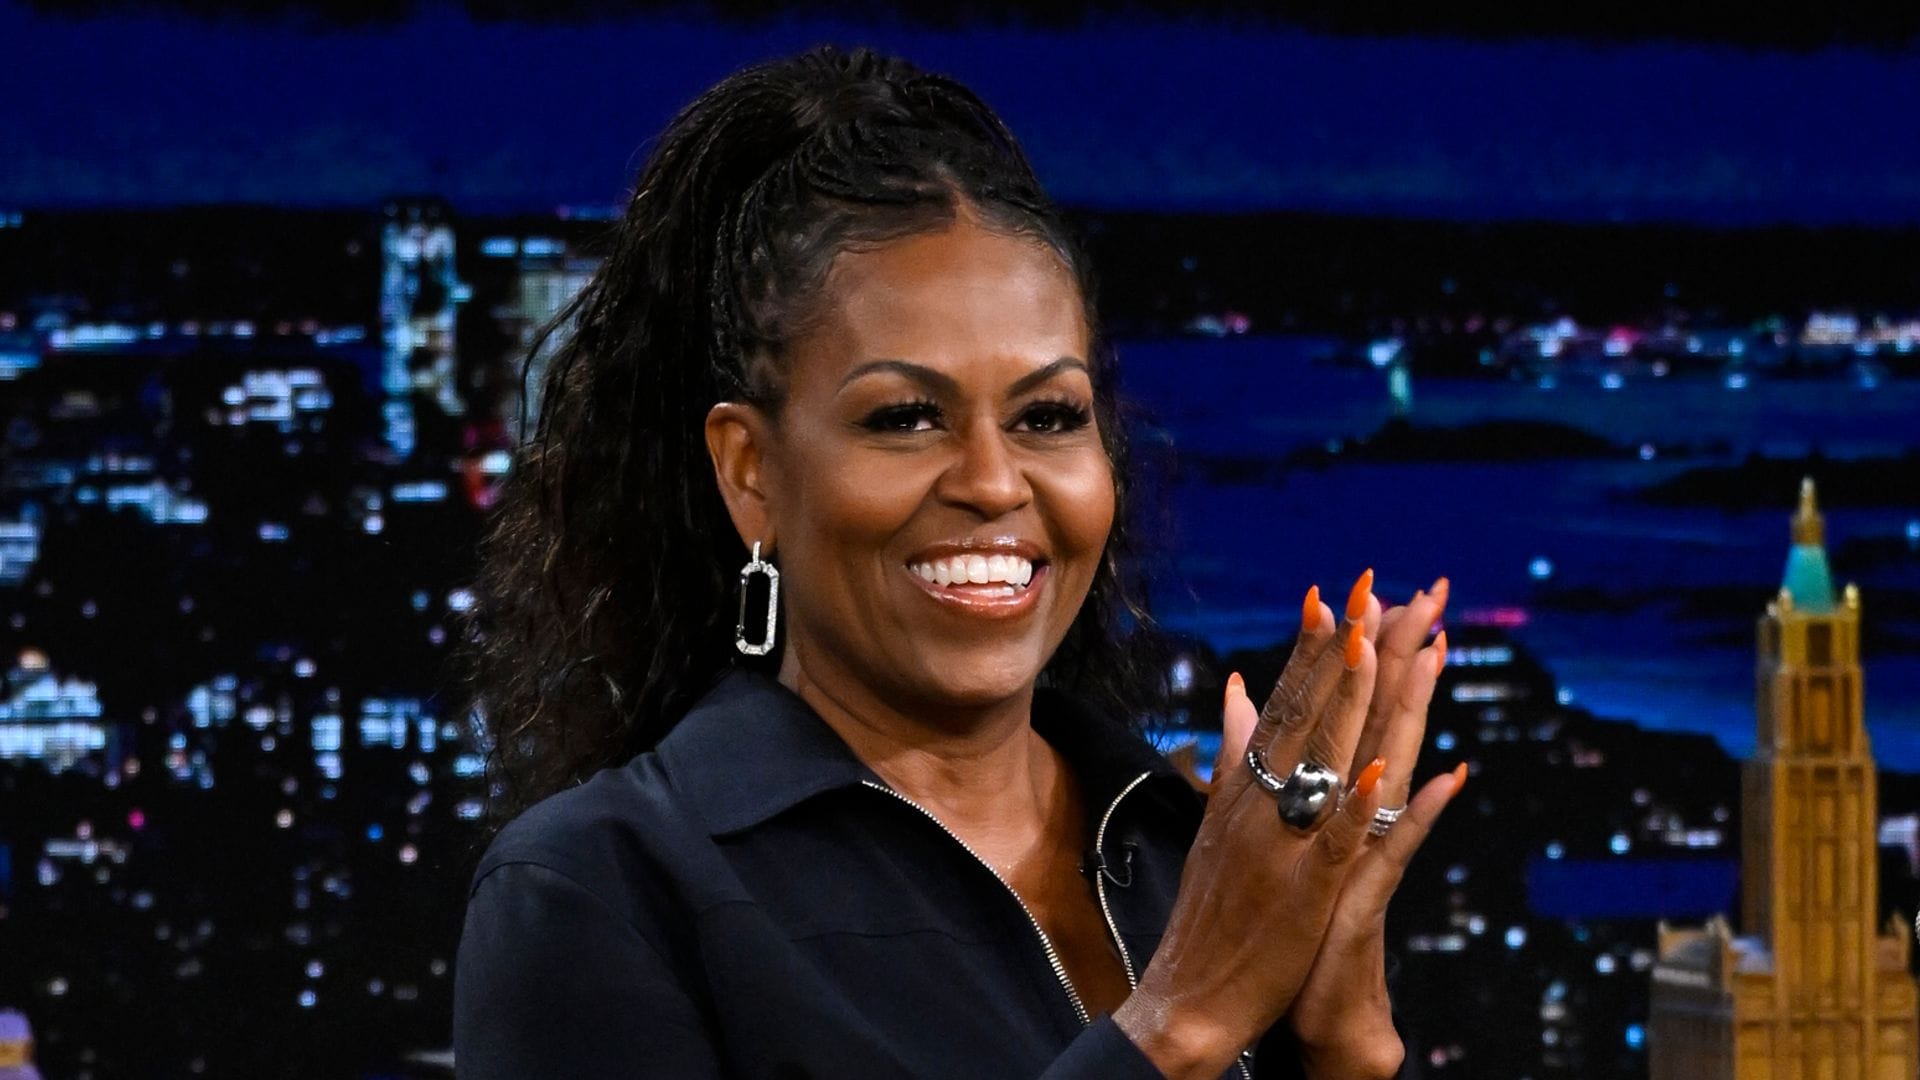 Michelle Obama celebrates the birthday of her 'little pea' Malia Obama